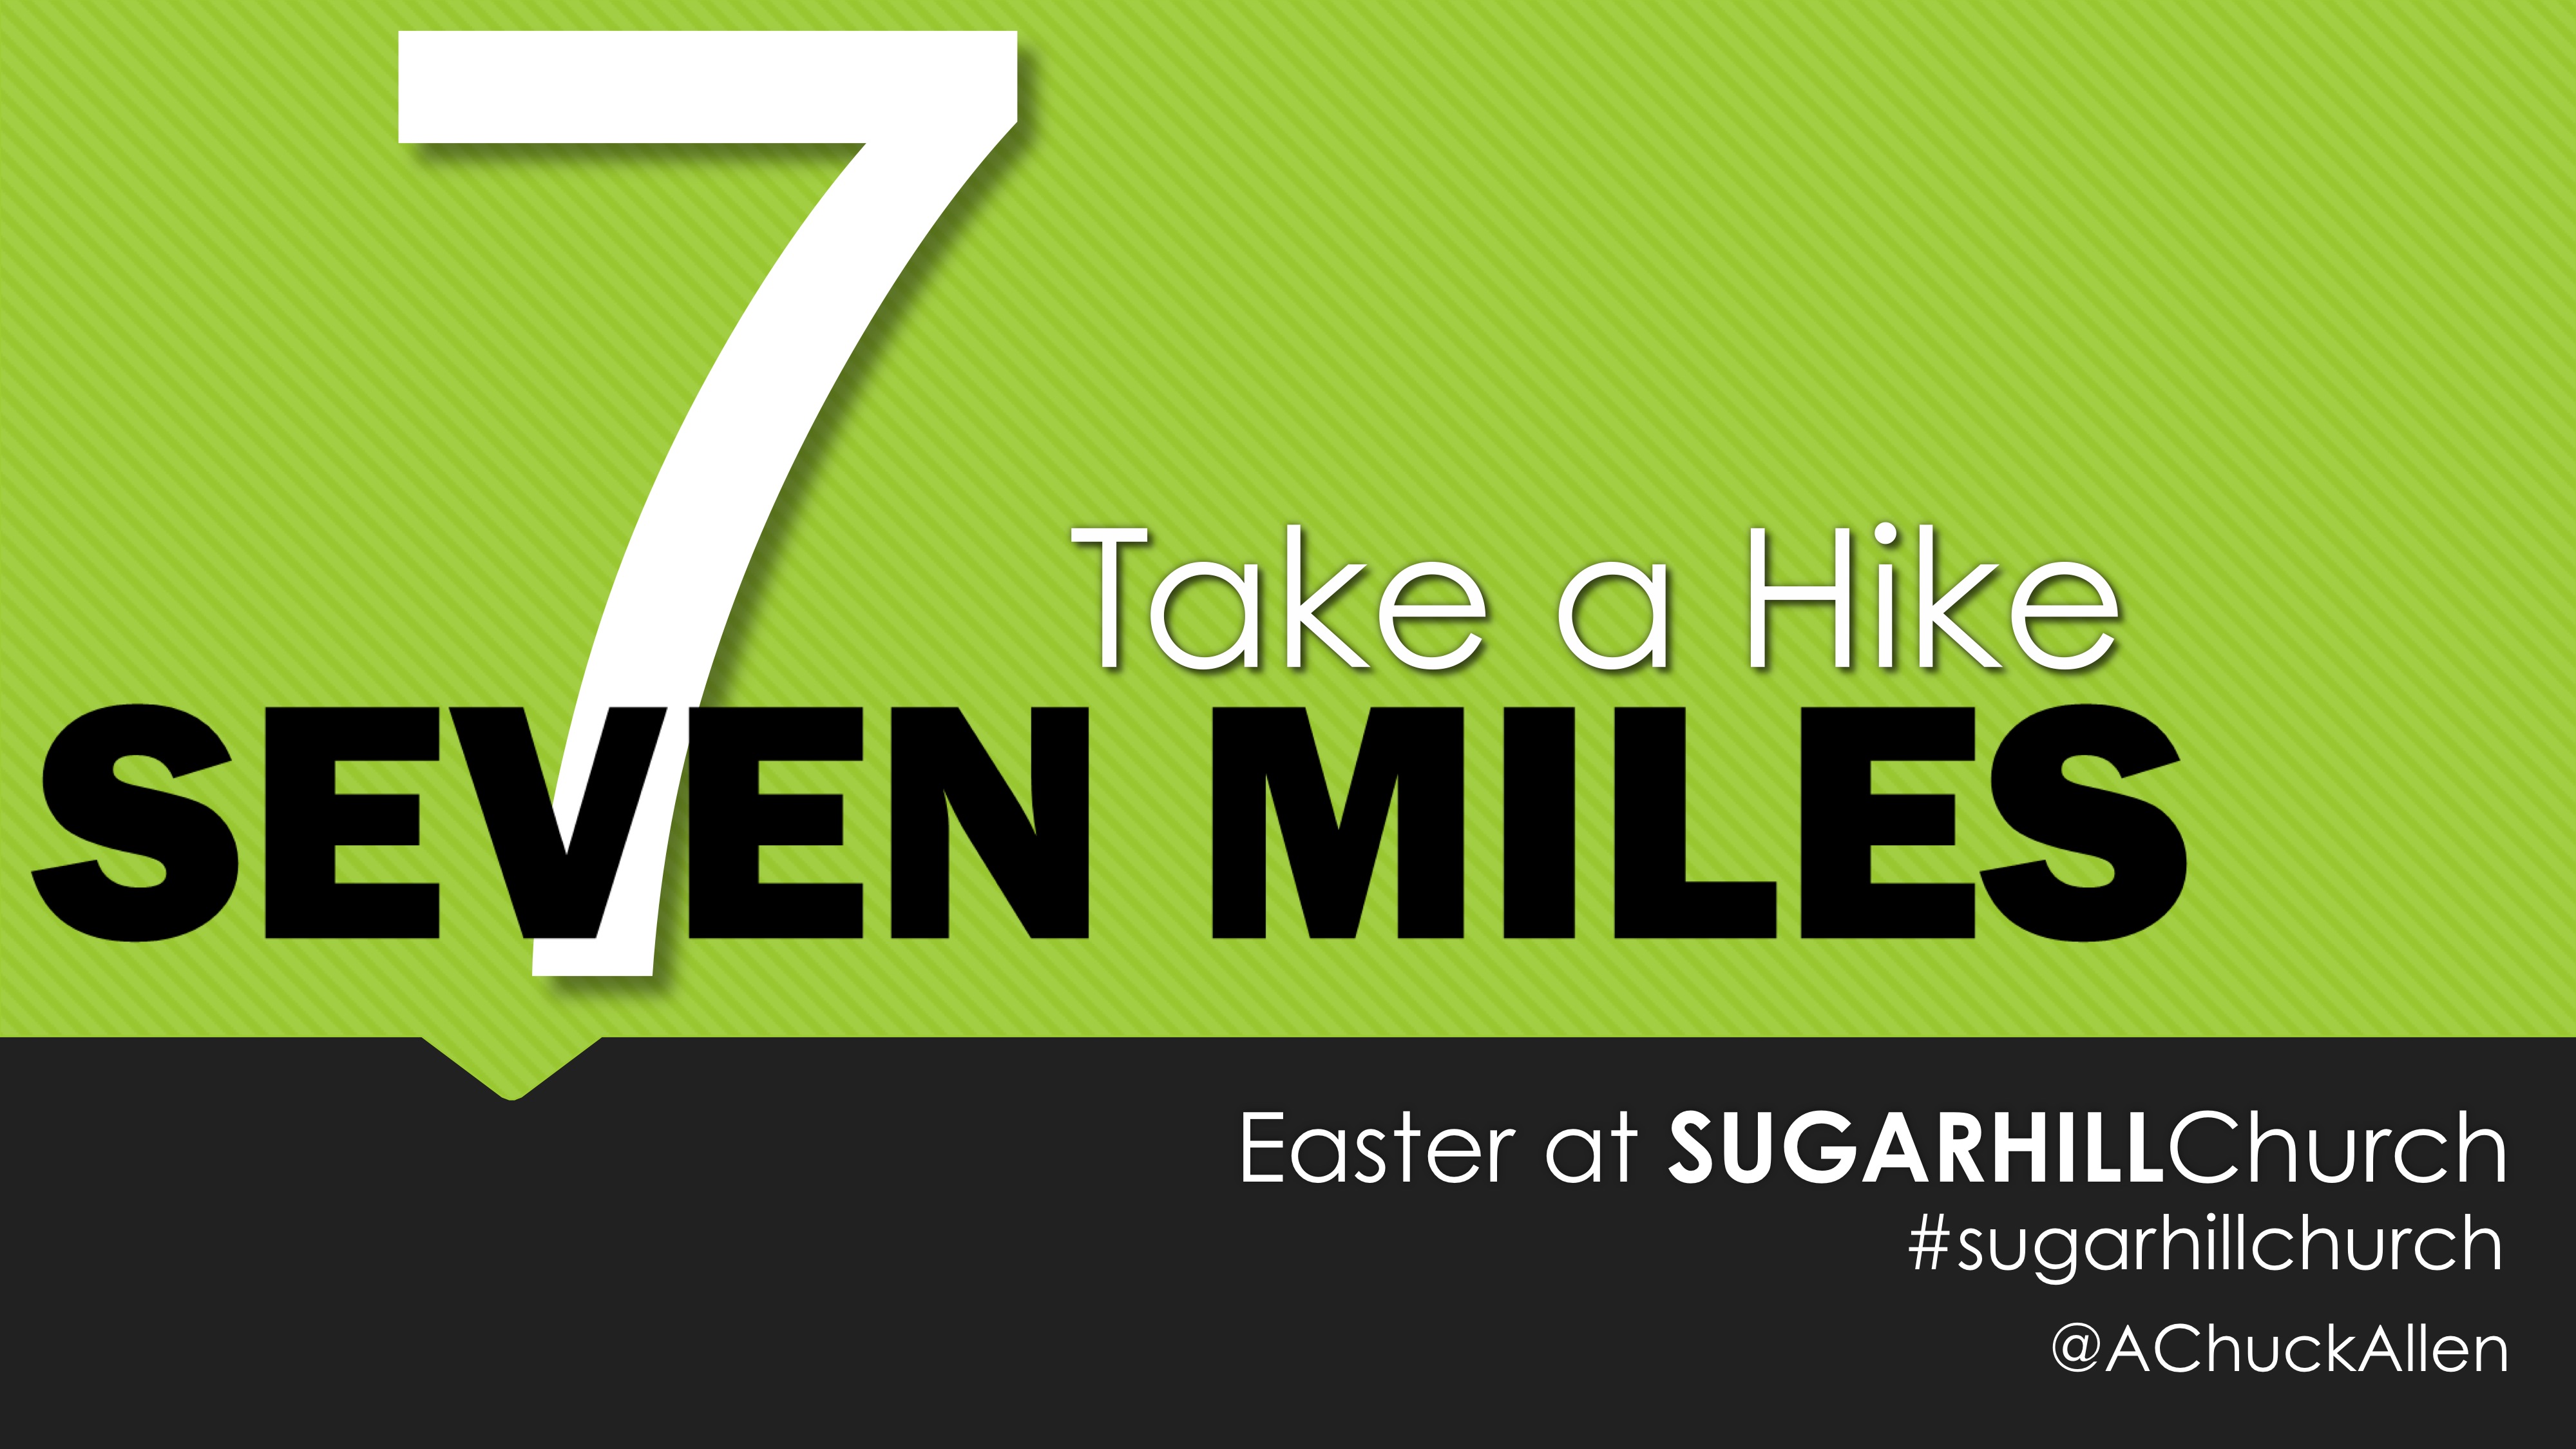 7 Miles: Take a Hike